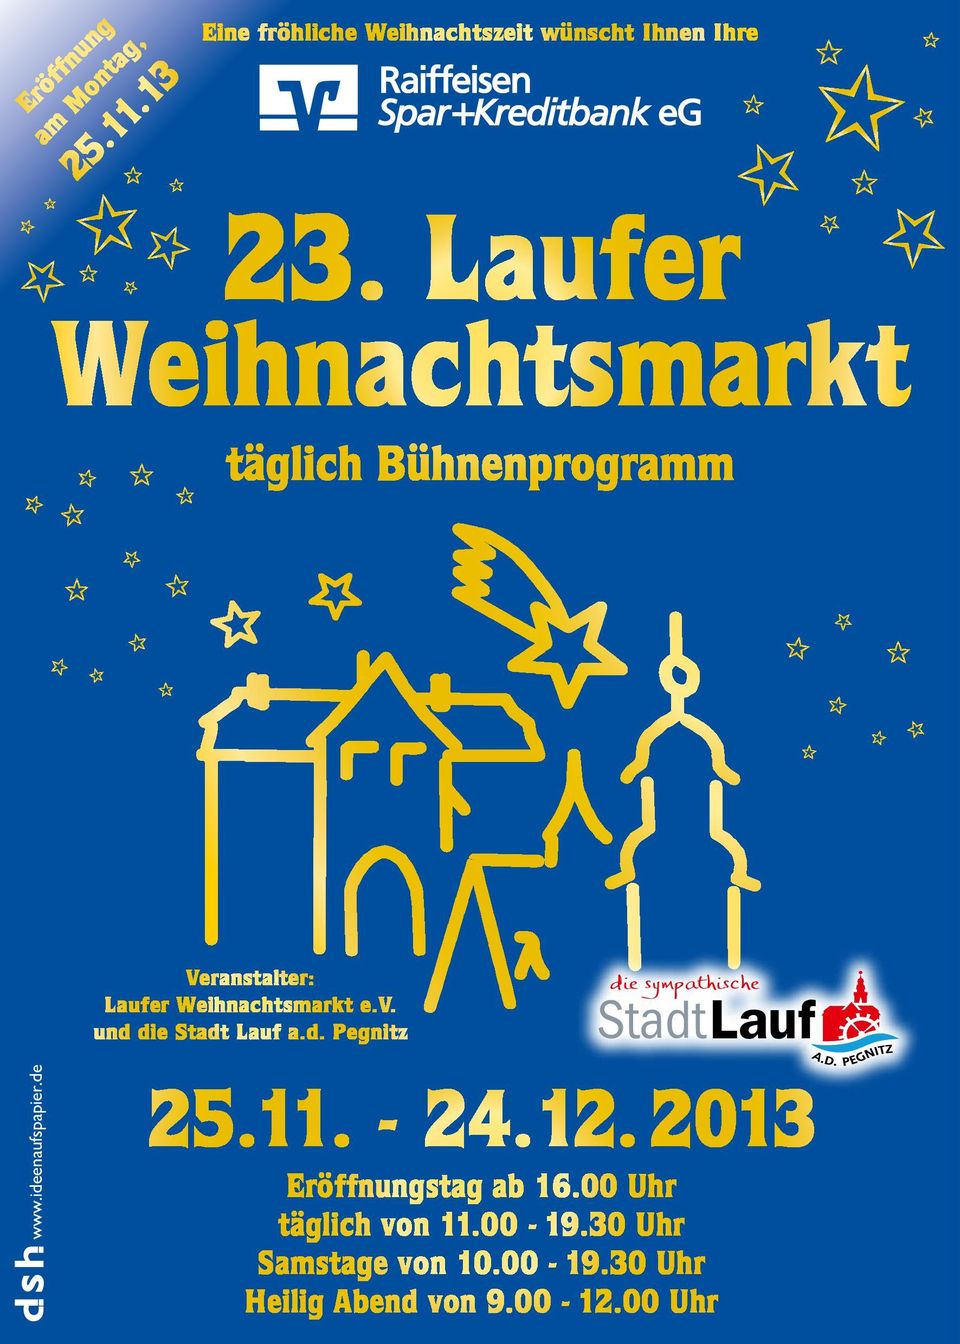 de Veranstalter: Laufer Weihnachtsmarkt e.v. und die Stadt Lauf a.d. Pegnitz die sympathische StadtLauf 25.